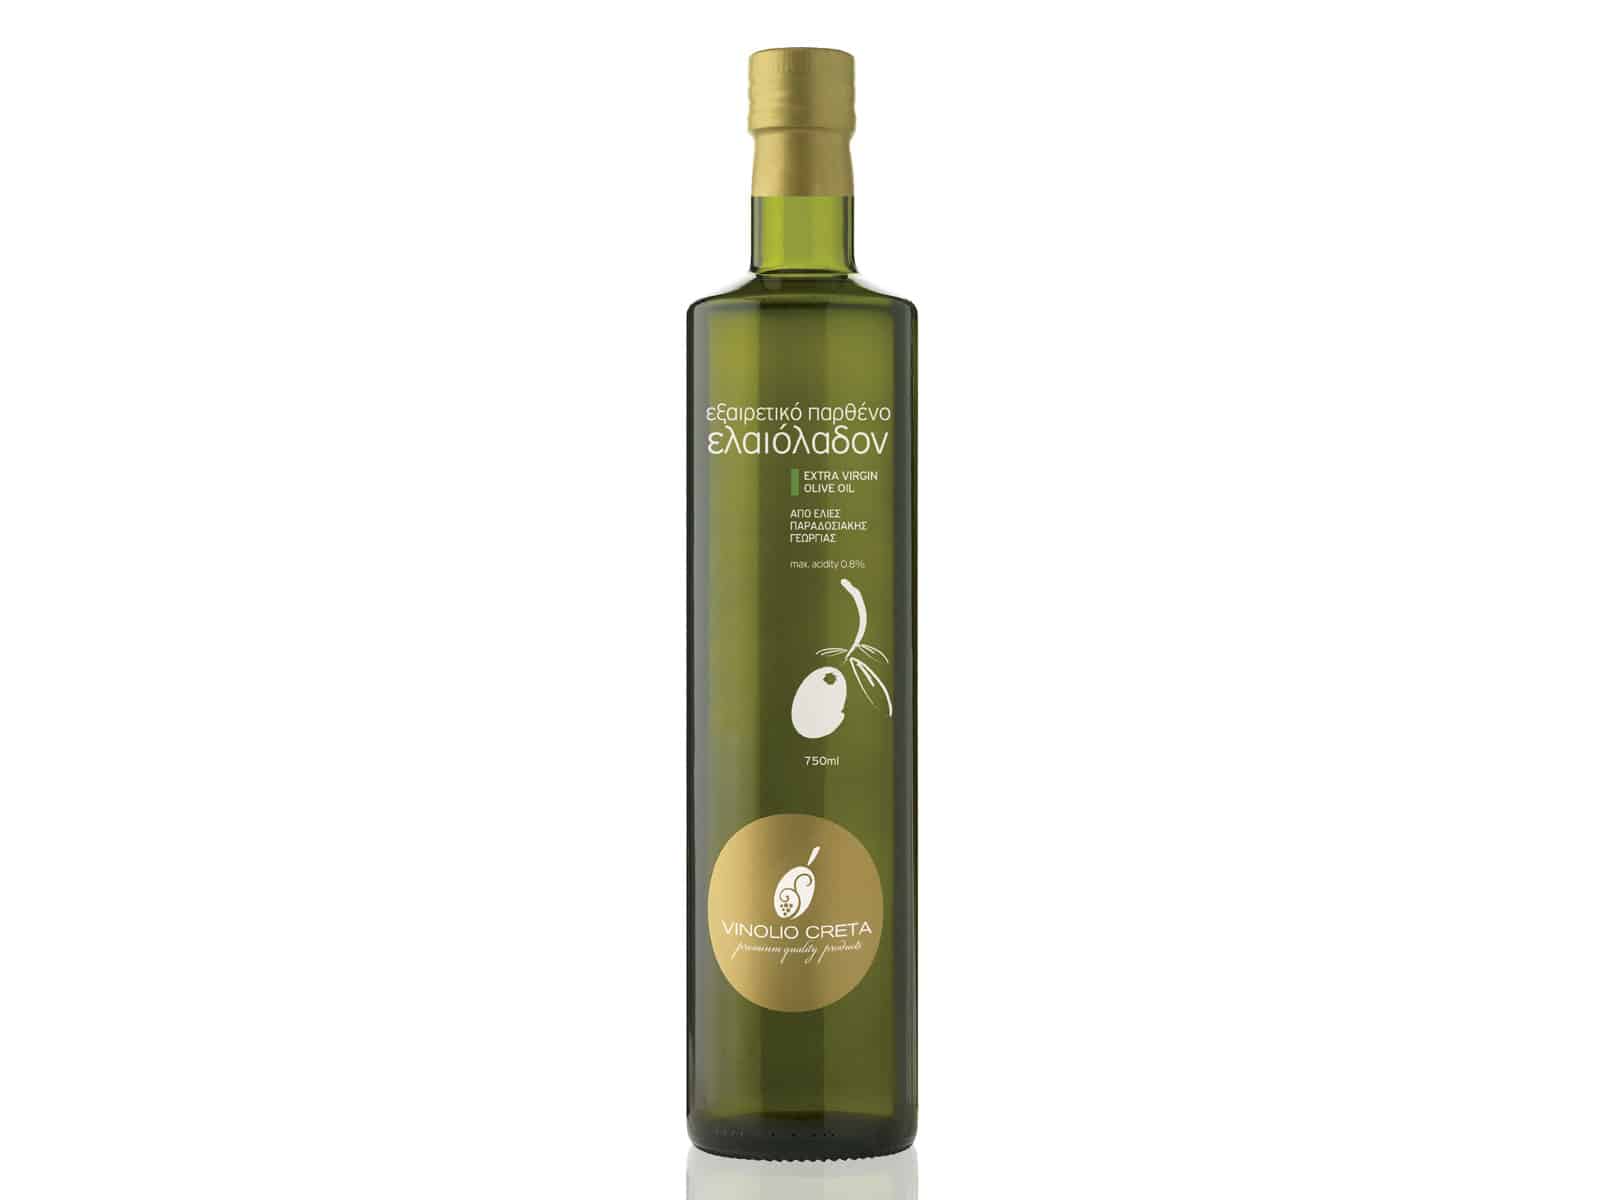 Vinolio Creta Traditional Olive Oil Packaging